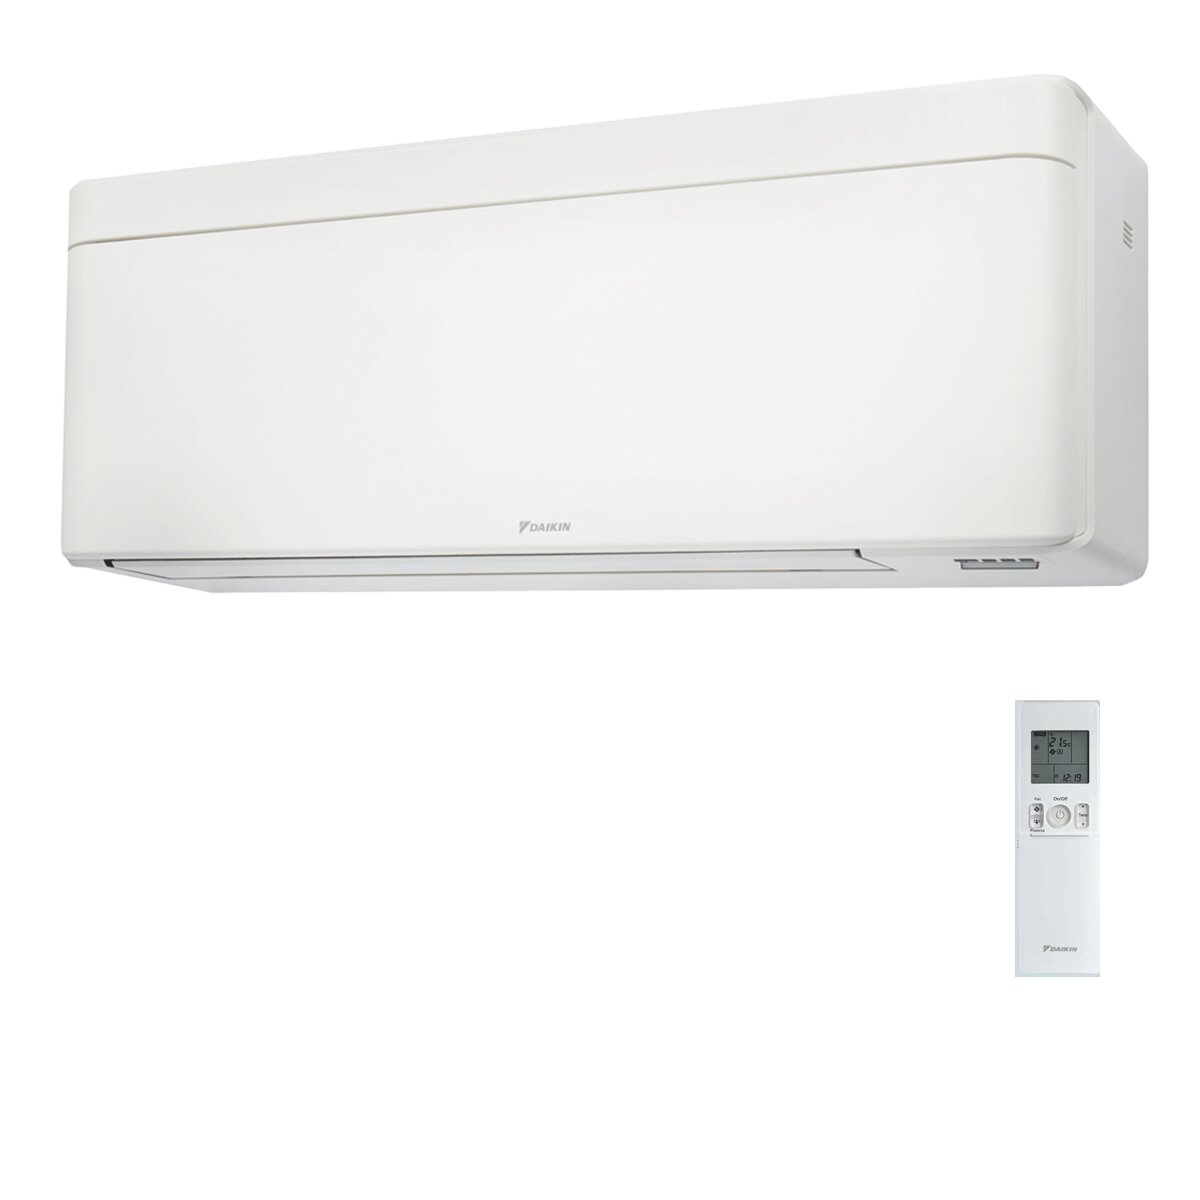 Daikin Stylish White trial split air conditioner 7000+9000+18000 BTU inverter A++ wifi external unit 6.8 kW